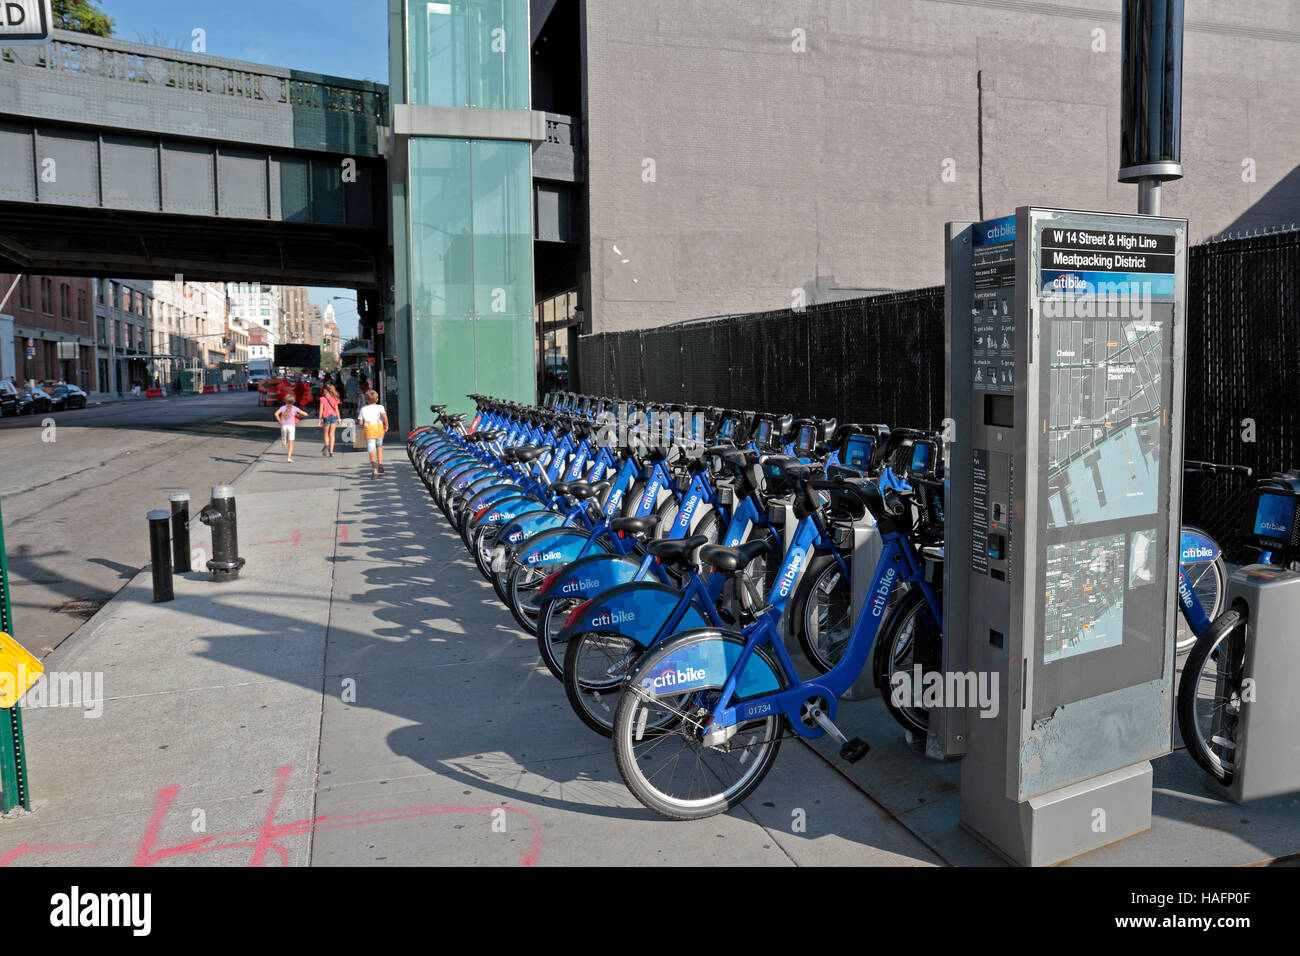 Un presque plein de Citi bank Bike Vélos sur W 14th Street, à proximité de Chelsea, New York, United States. Banque D'Images